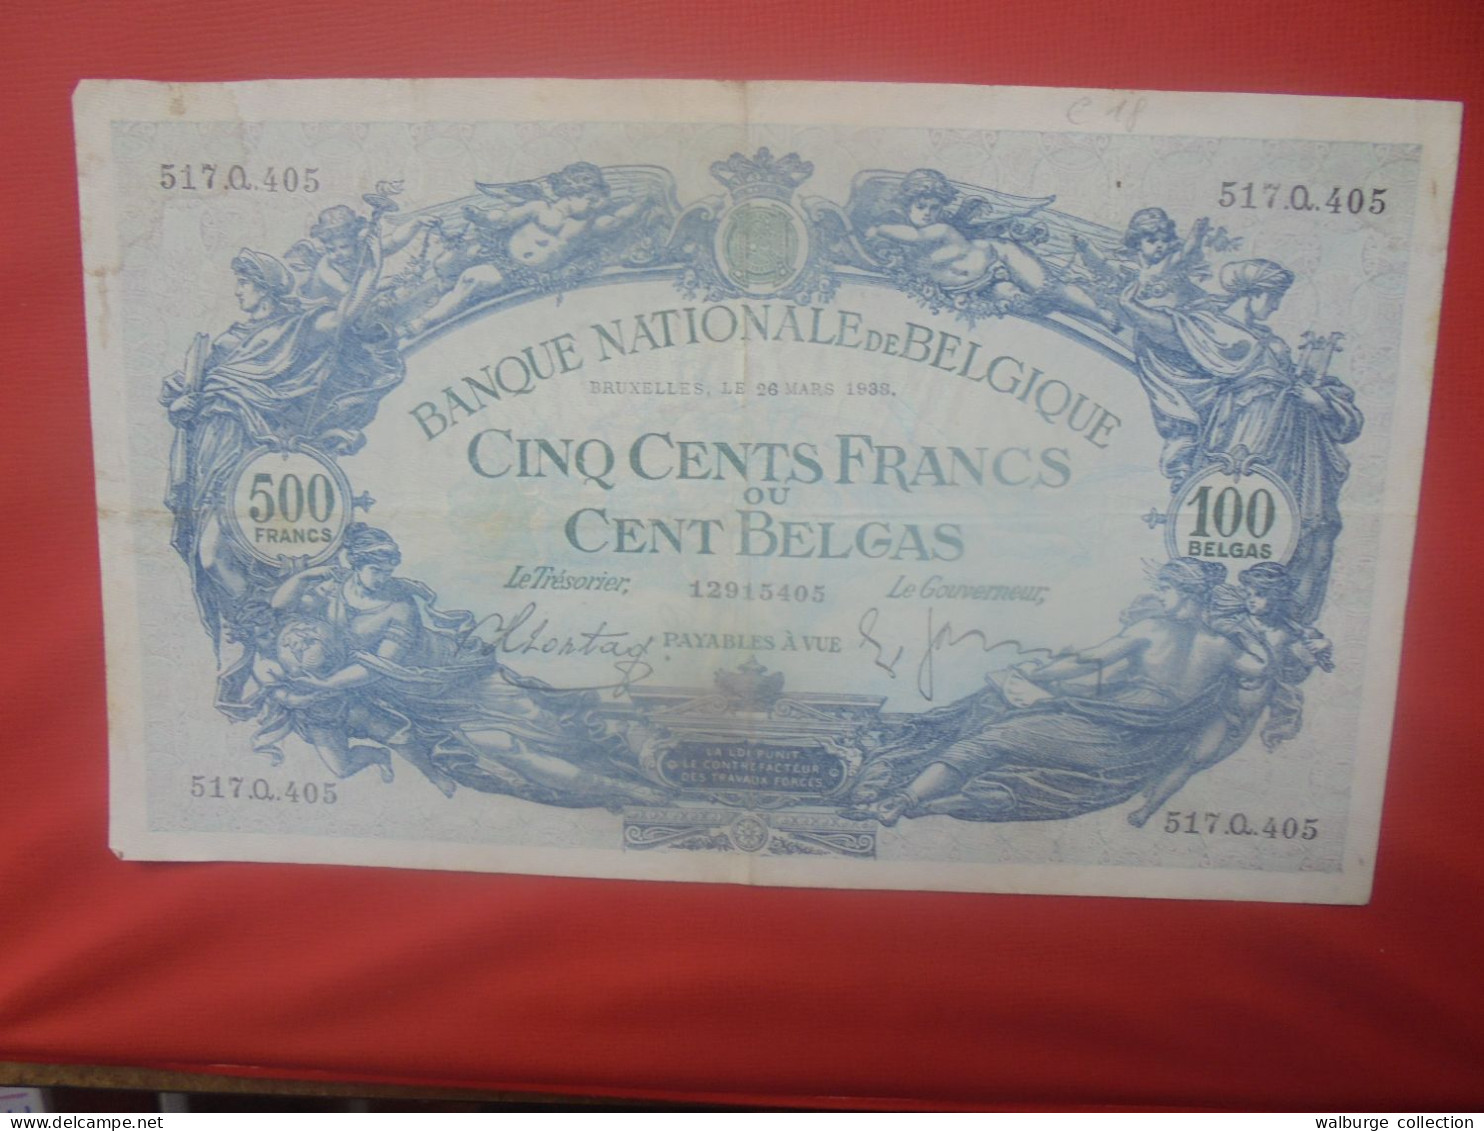 BELGIQUE 500 Francs 26-3-1938 Circuler (B.18) - 500 Francos-100 Belgas